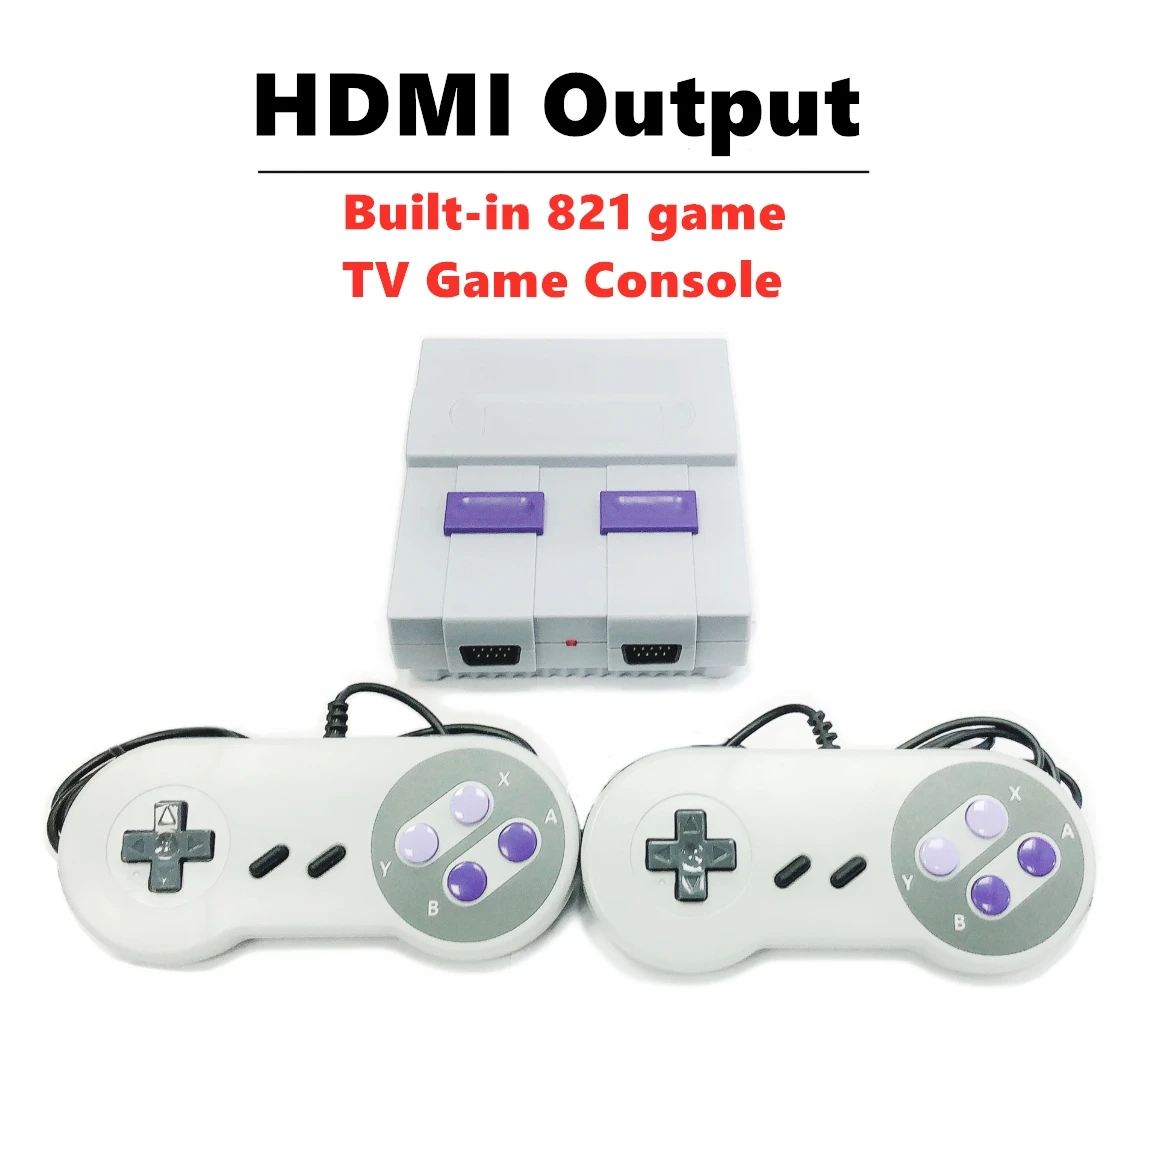 HD мини ТВ игровая консоль встроенный 821 игр 8 бит Ретро видео игра с двумя плеерами игровой автомат HDMI классический Plug and play